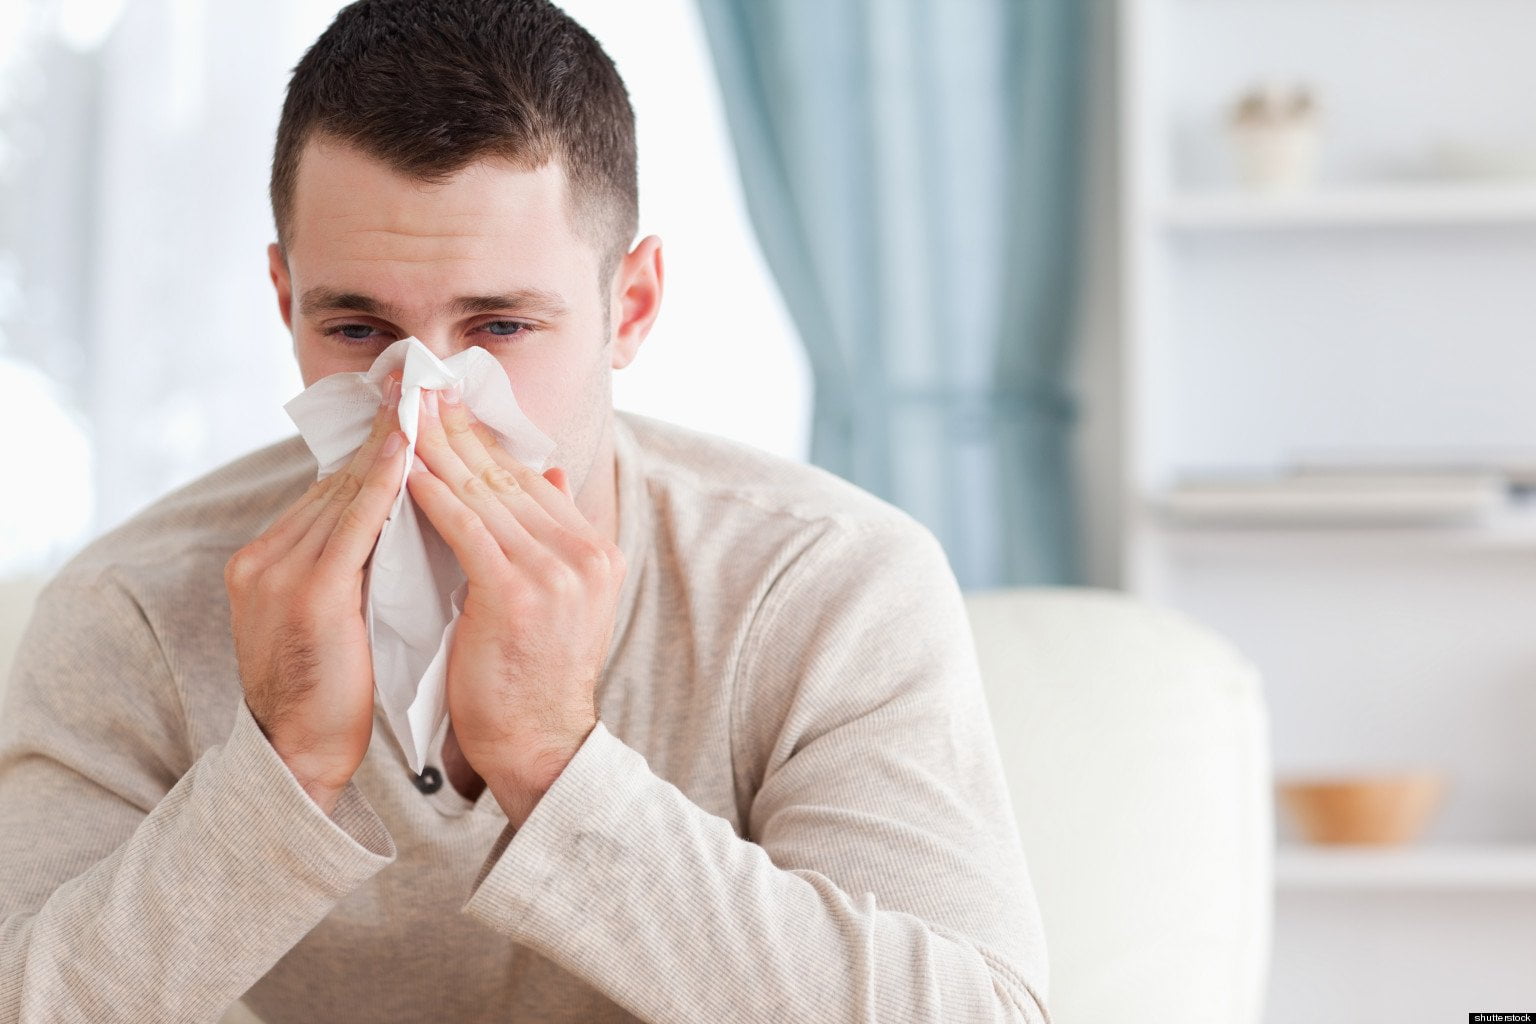 كورونا والإنفلونزا ونزلات البرد.. كيف تفرق بين الأعراض؟